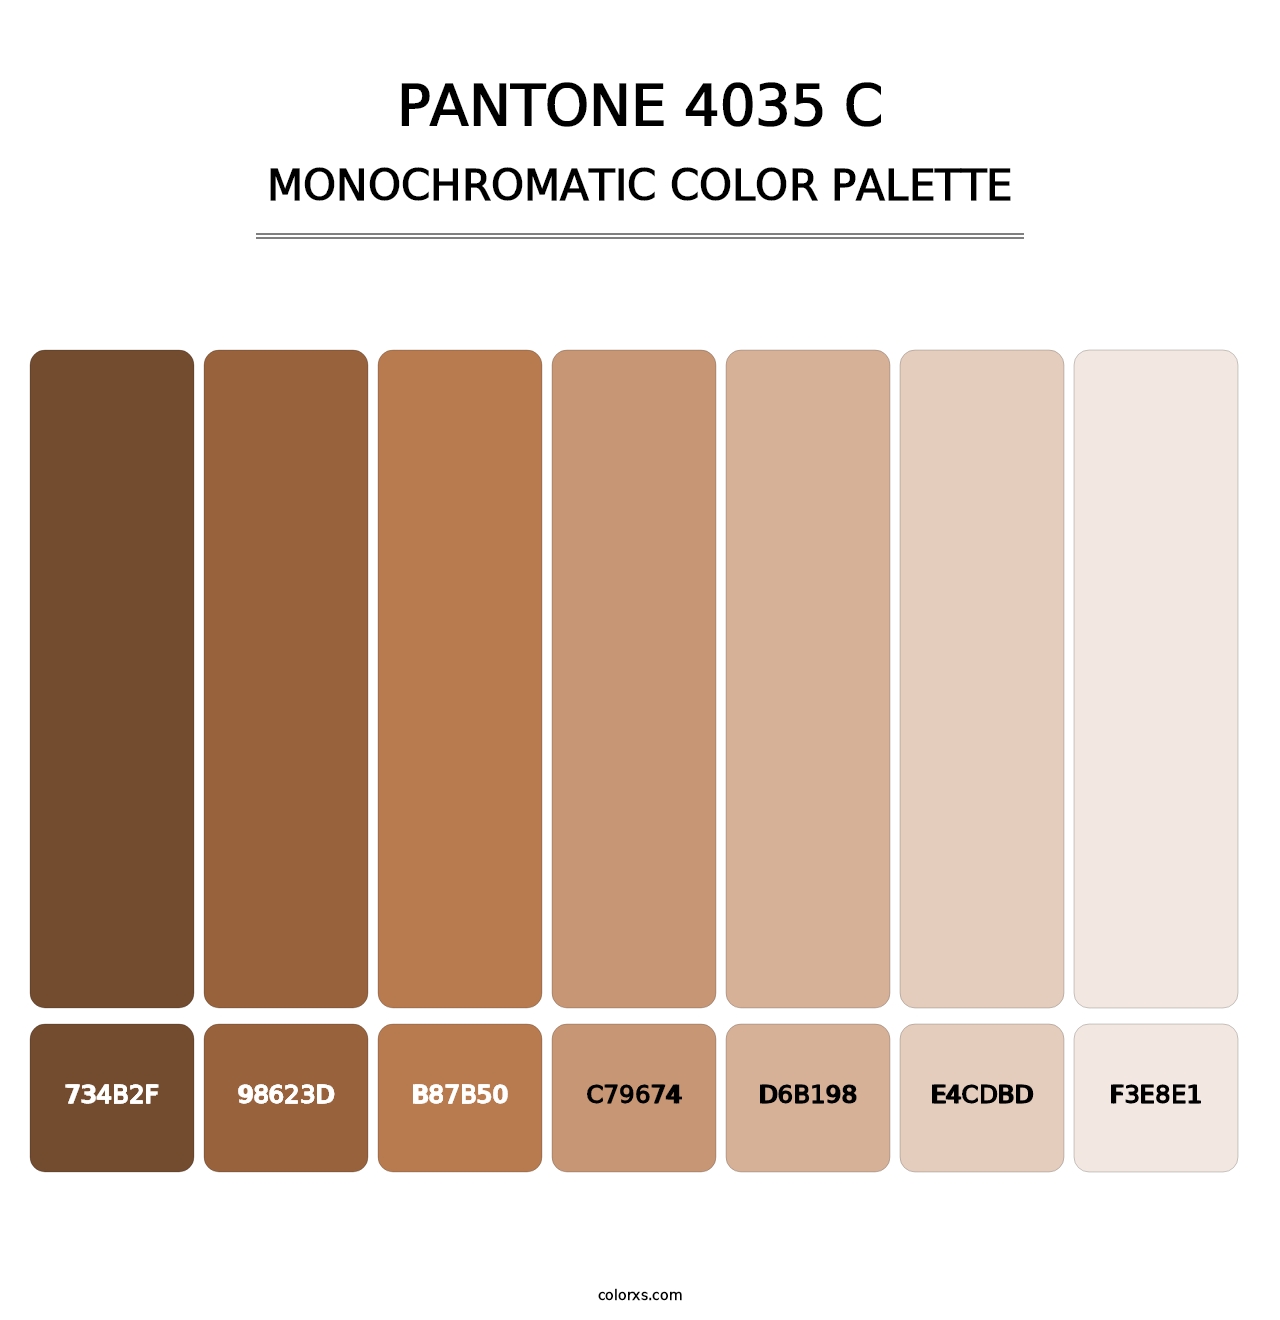 PANTONE 4035 C - Monochromatic Color Palette